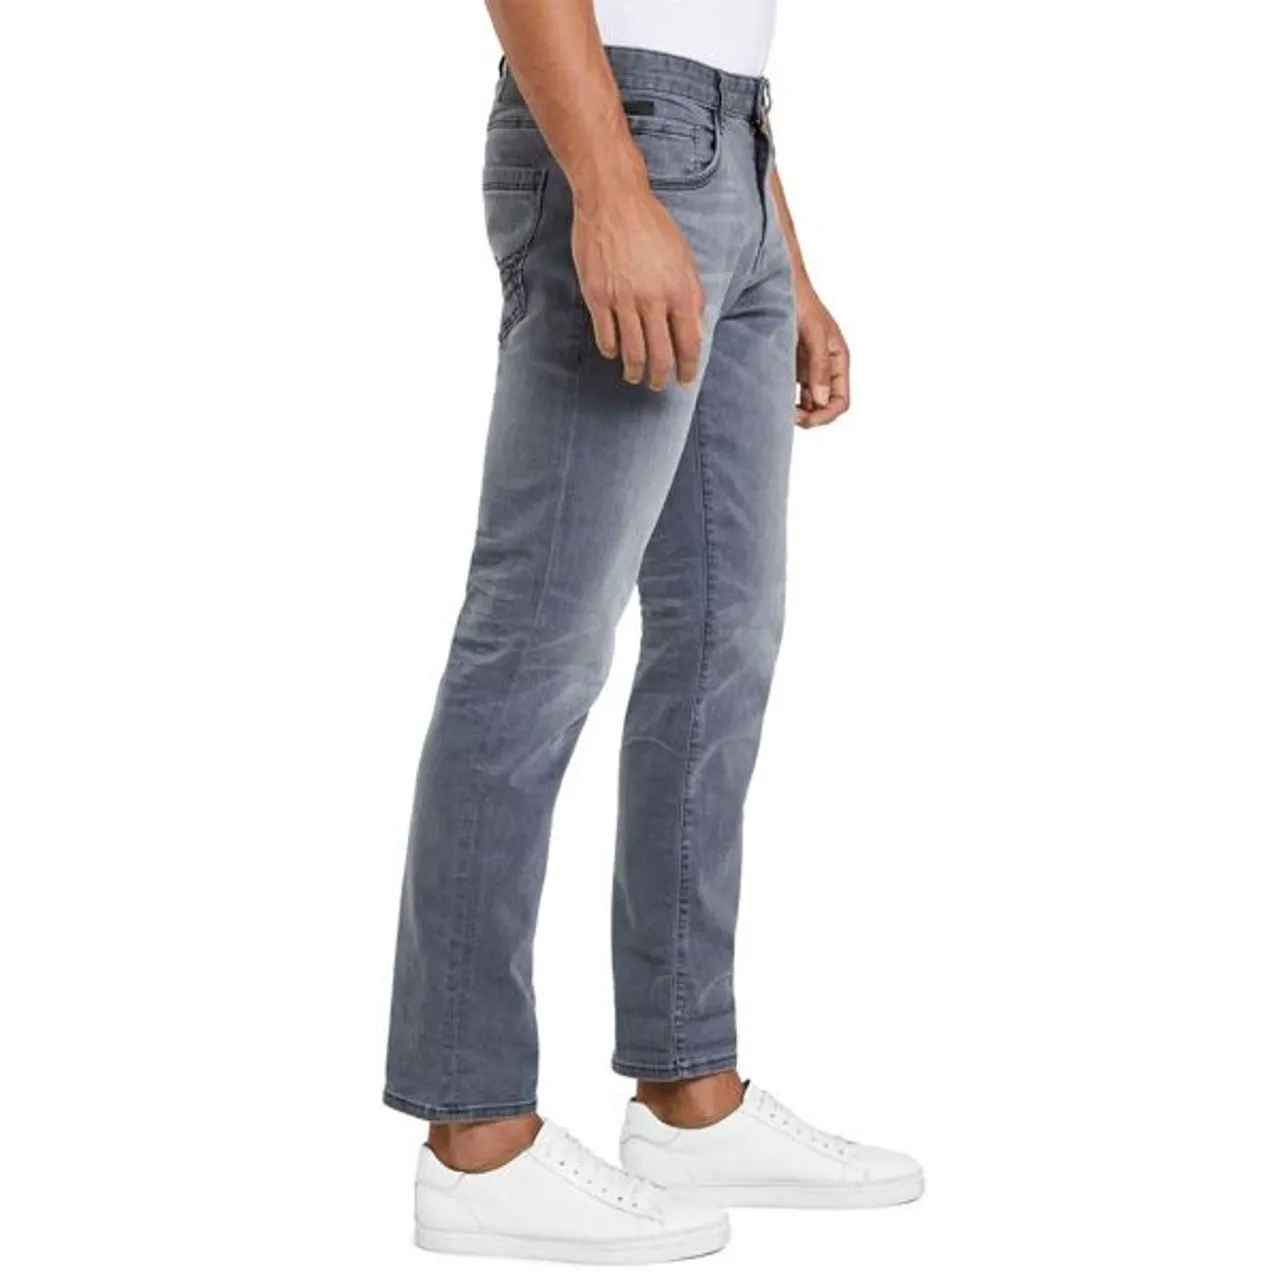 5-Pocket-Jeans TOM TAILOR "Josh" Gr. 33, Länge 36, grau (grey denim) Herren Jeans 5-Pocket-Jeans